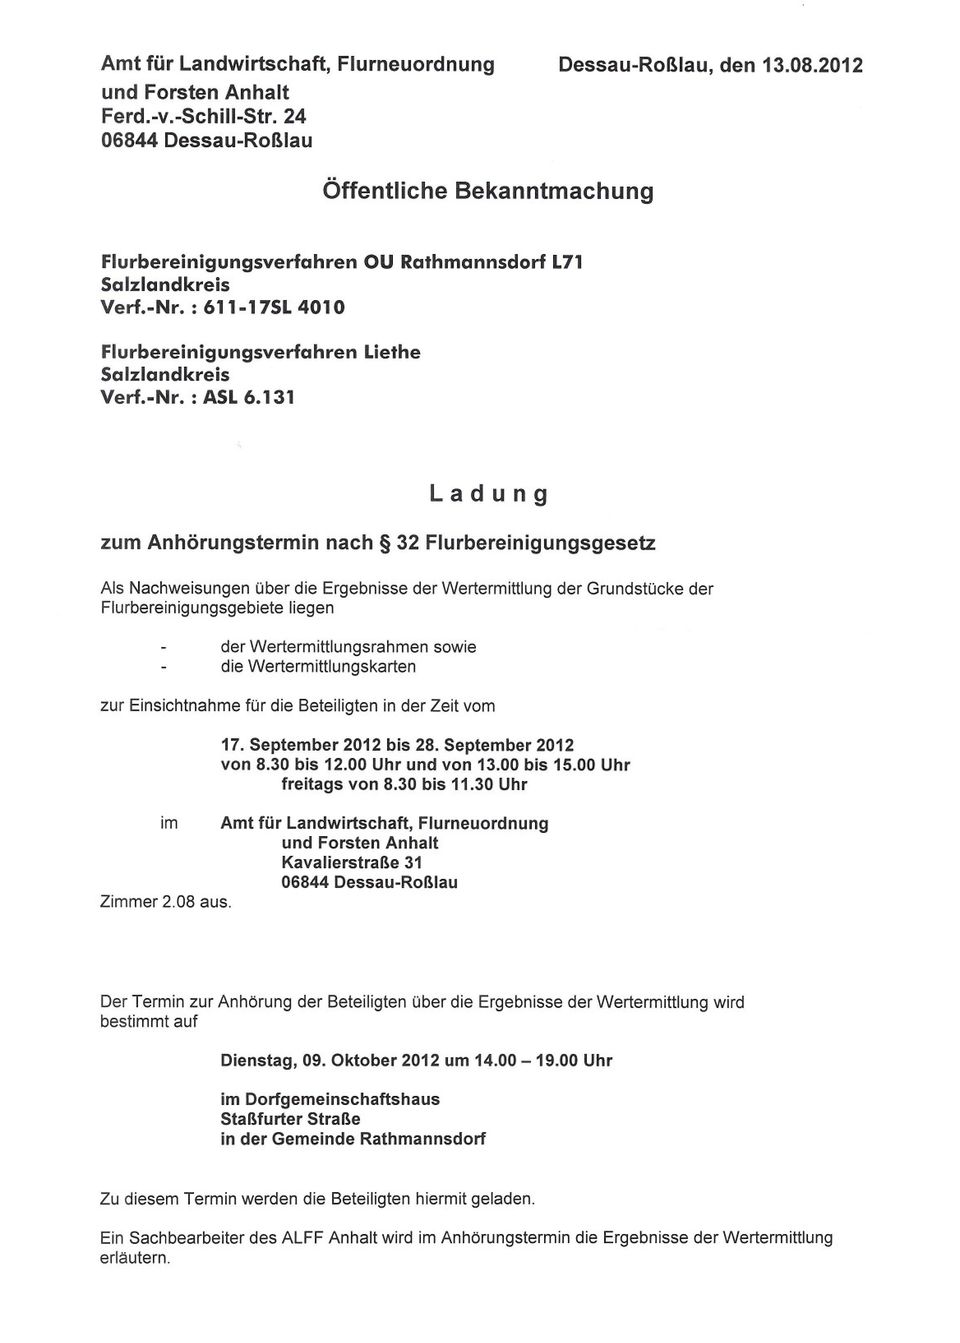 131 OU Rathmannsdorf L71 Liethe Ladung zum Anhörungstermin nach 32 Flurbereinigungsgesetz Als Nachweisungen über die Ergebnisse der Wertermittlung der Grundstücke der Flurbereinigungsgebiete liegen